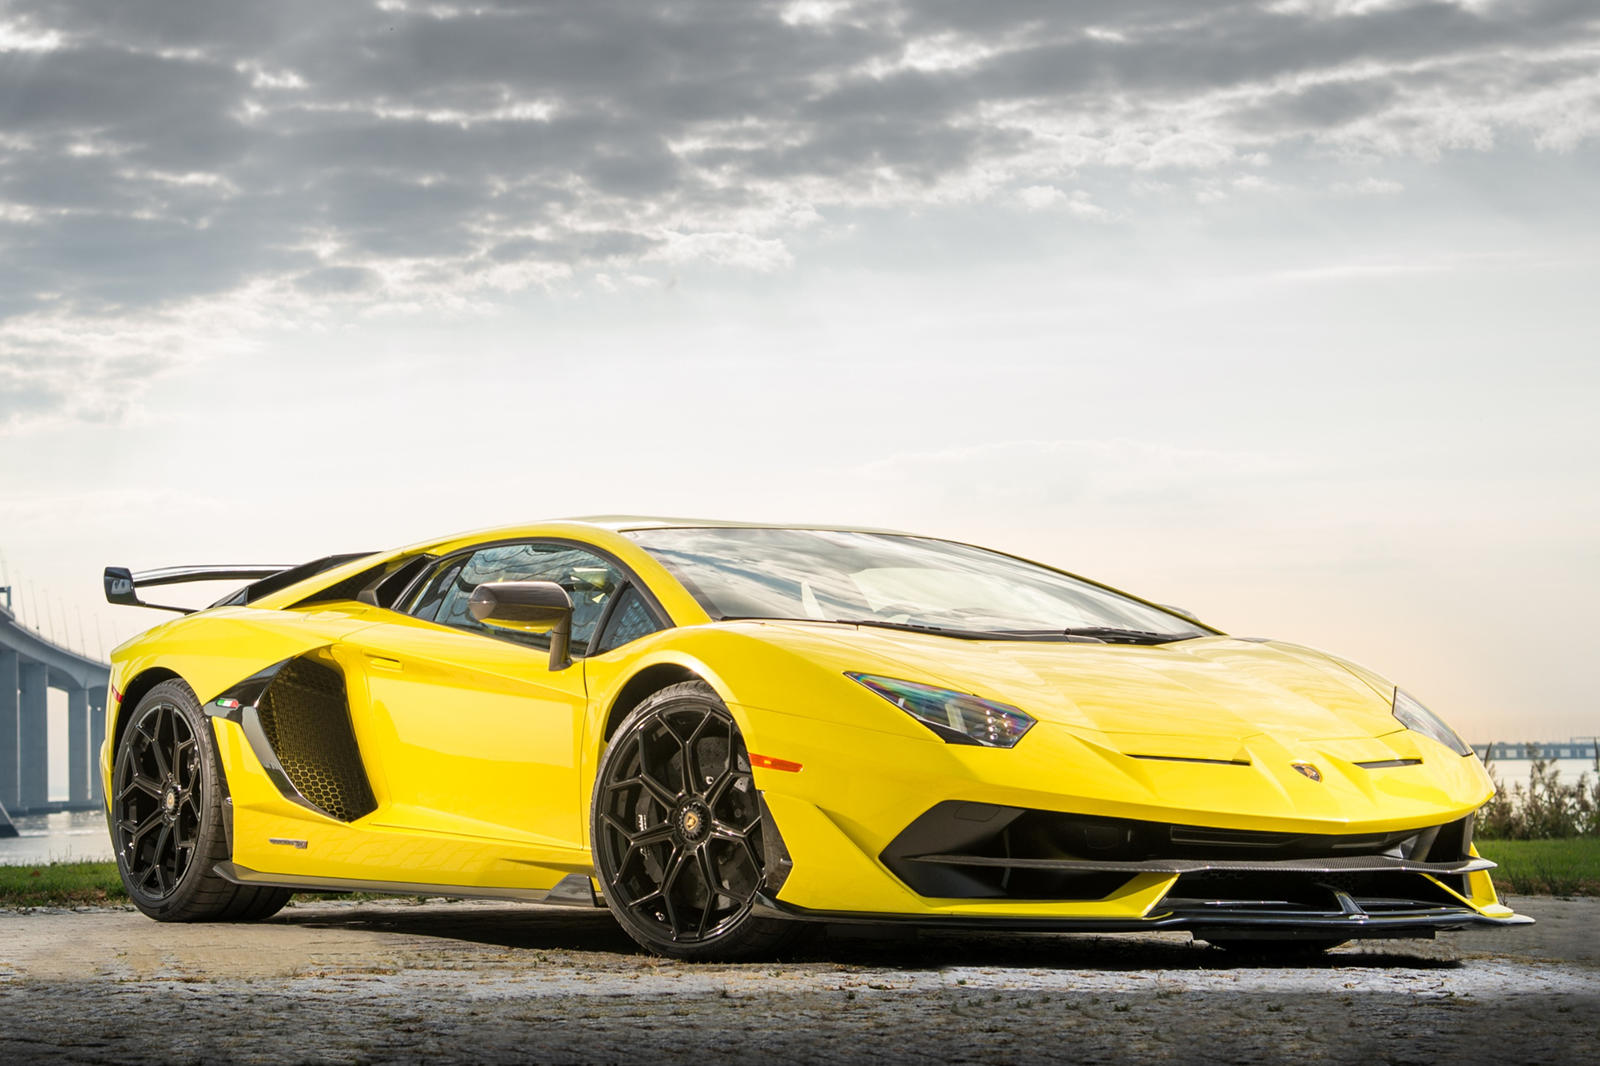 Младший Пих ясно видит возможность роста для Lamborghini за пределами недавно объявленного плана, состоящего из трех частей, согласно которому компания выпустит электромобиль к 2030 году. Его первым серийным гибридом, который должен появиться в 2023 